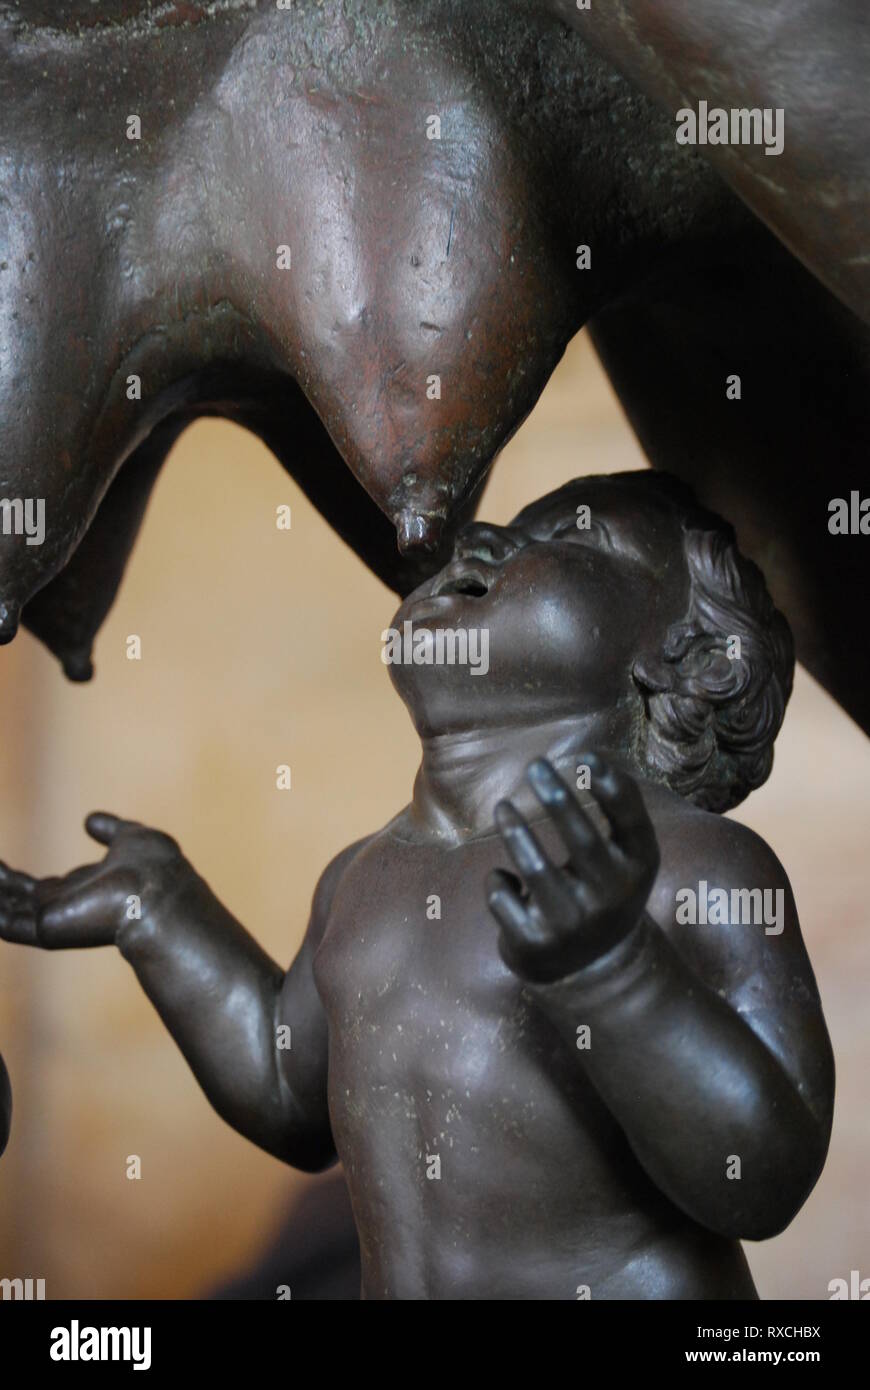 Le loup du Capitole, une sculpture en bronze représentant une scène de la légende de la fondation de Rome dans le musée du Capitole, Rome. Banque D'Images